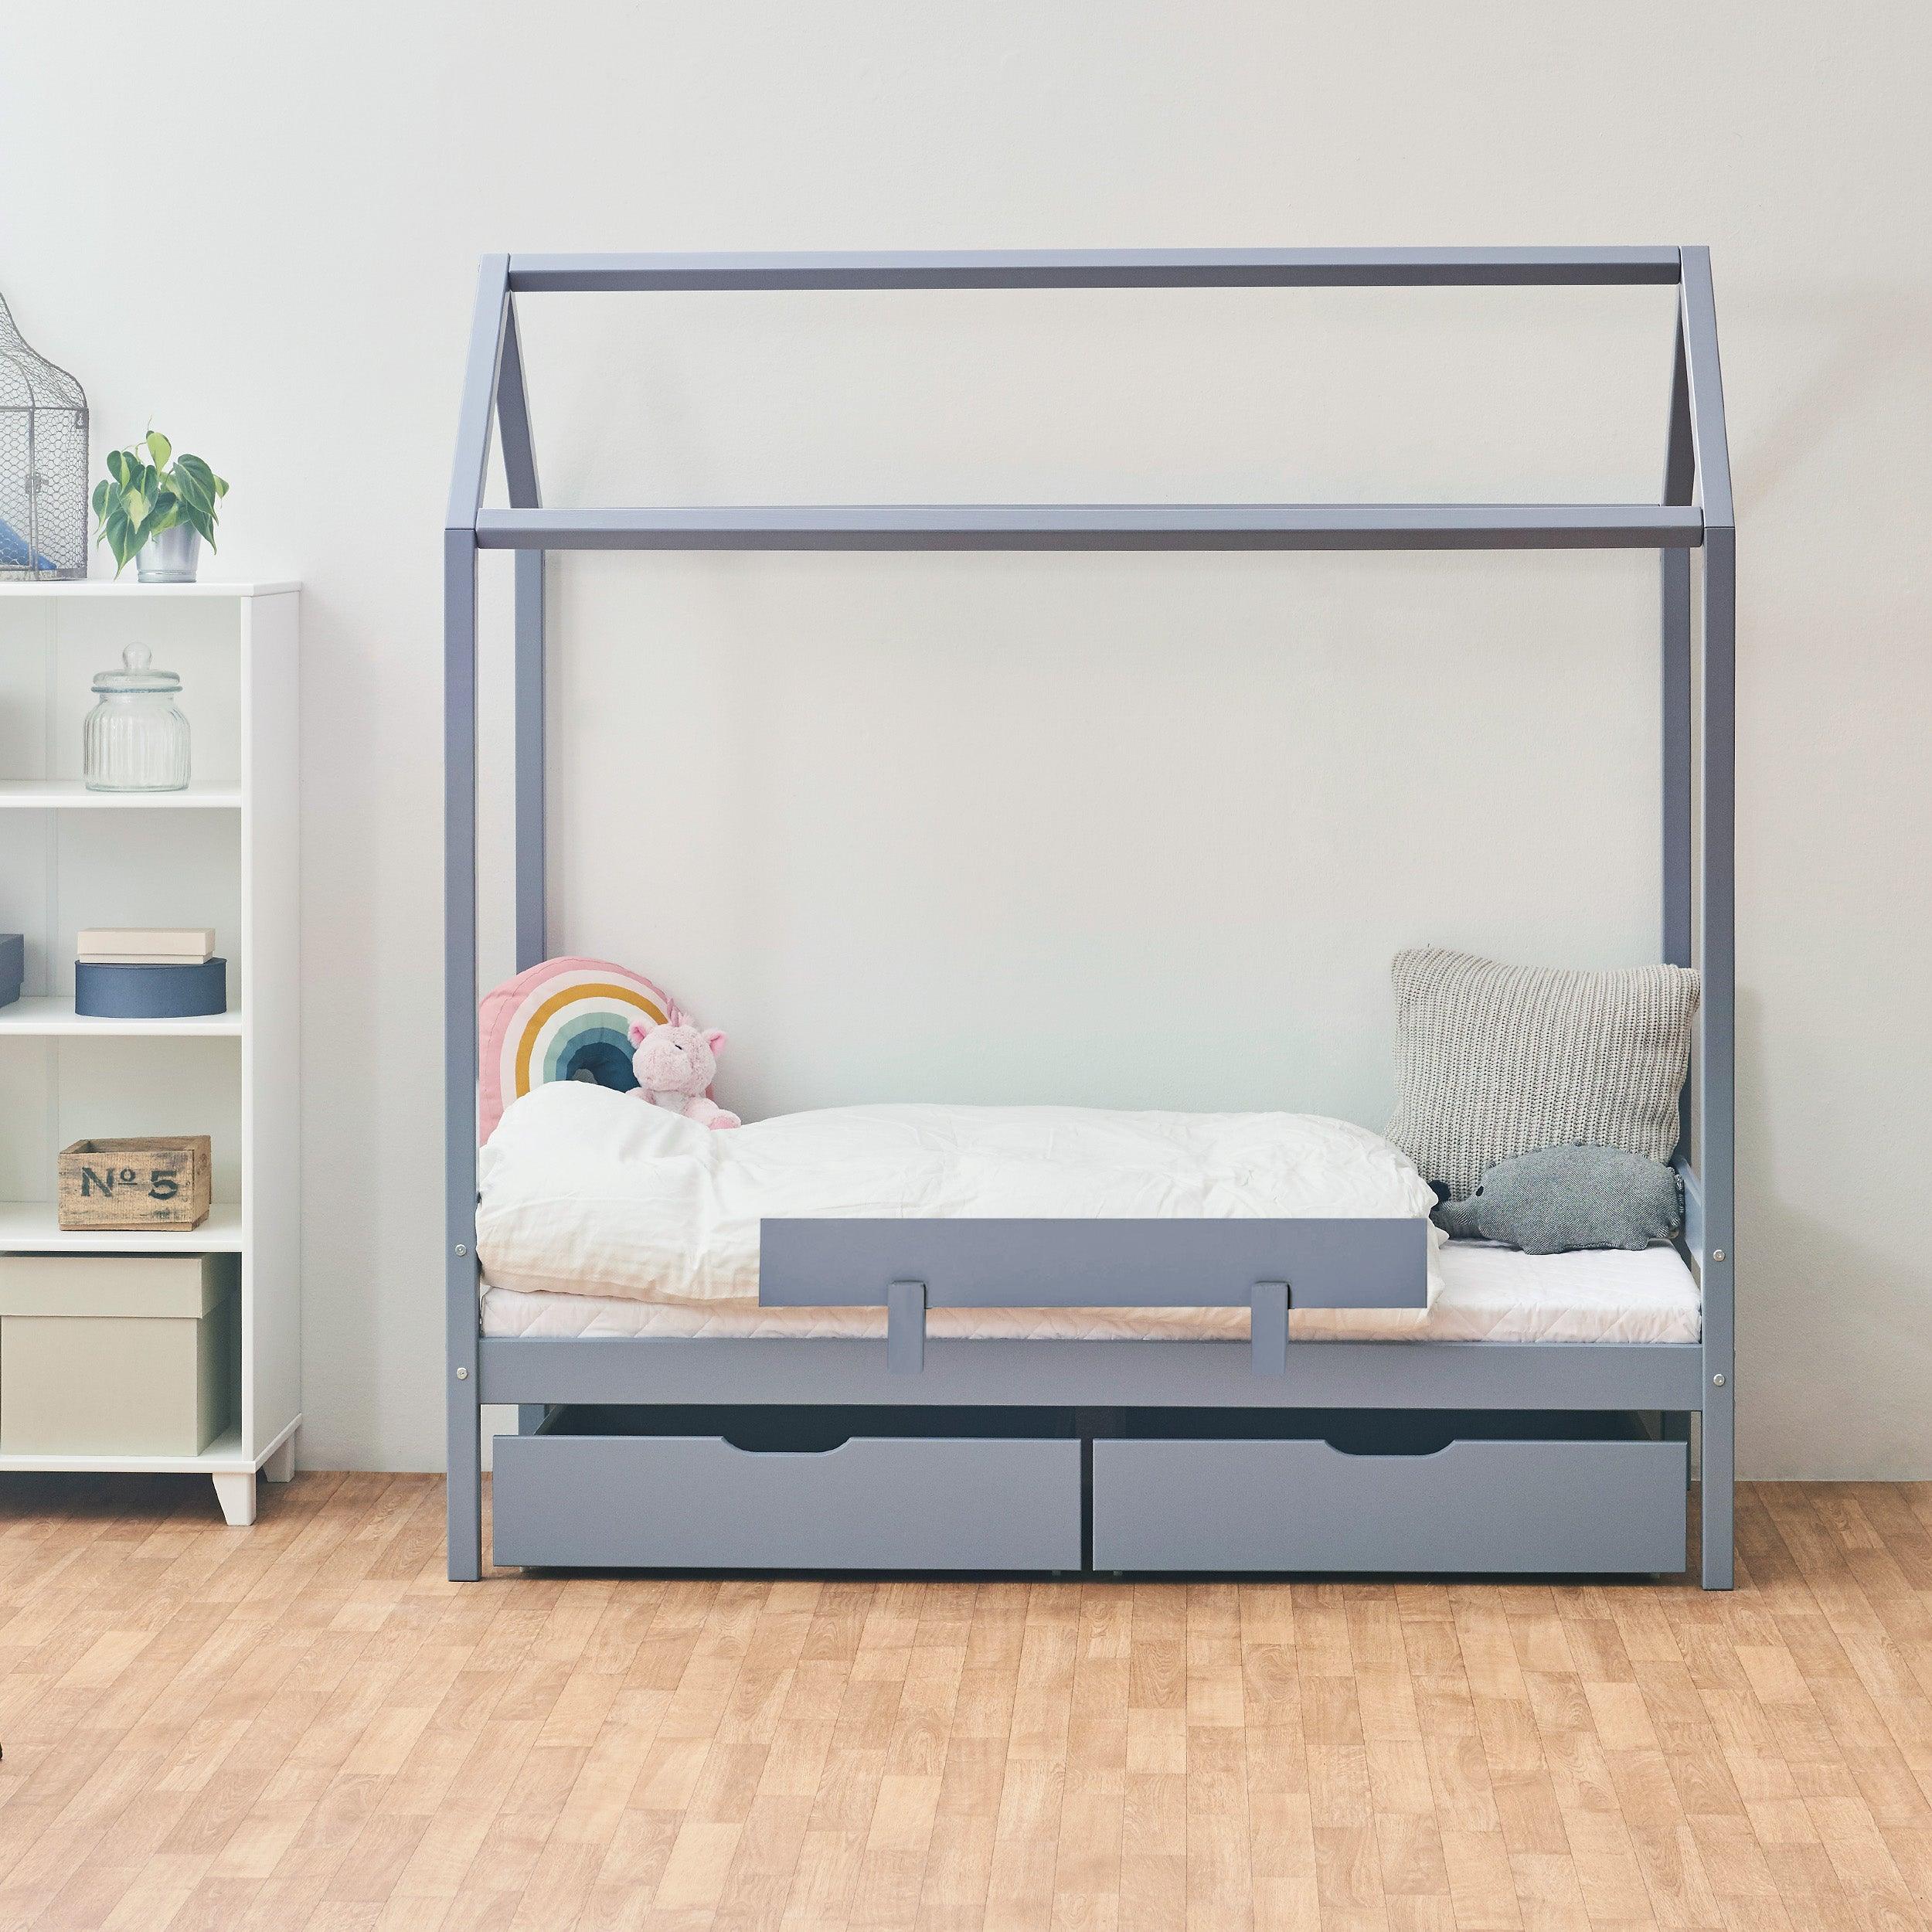 Outlet: ECO Comfort cama casita 70x160 cm con cajones & brandilla, azu